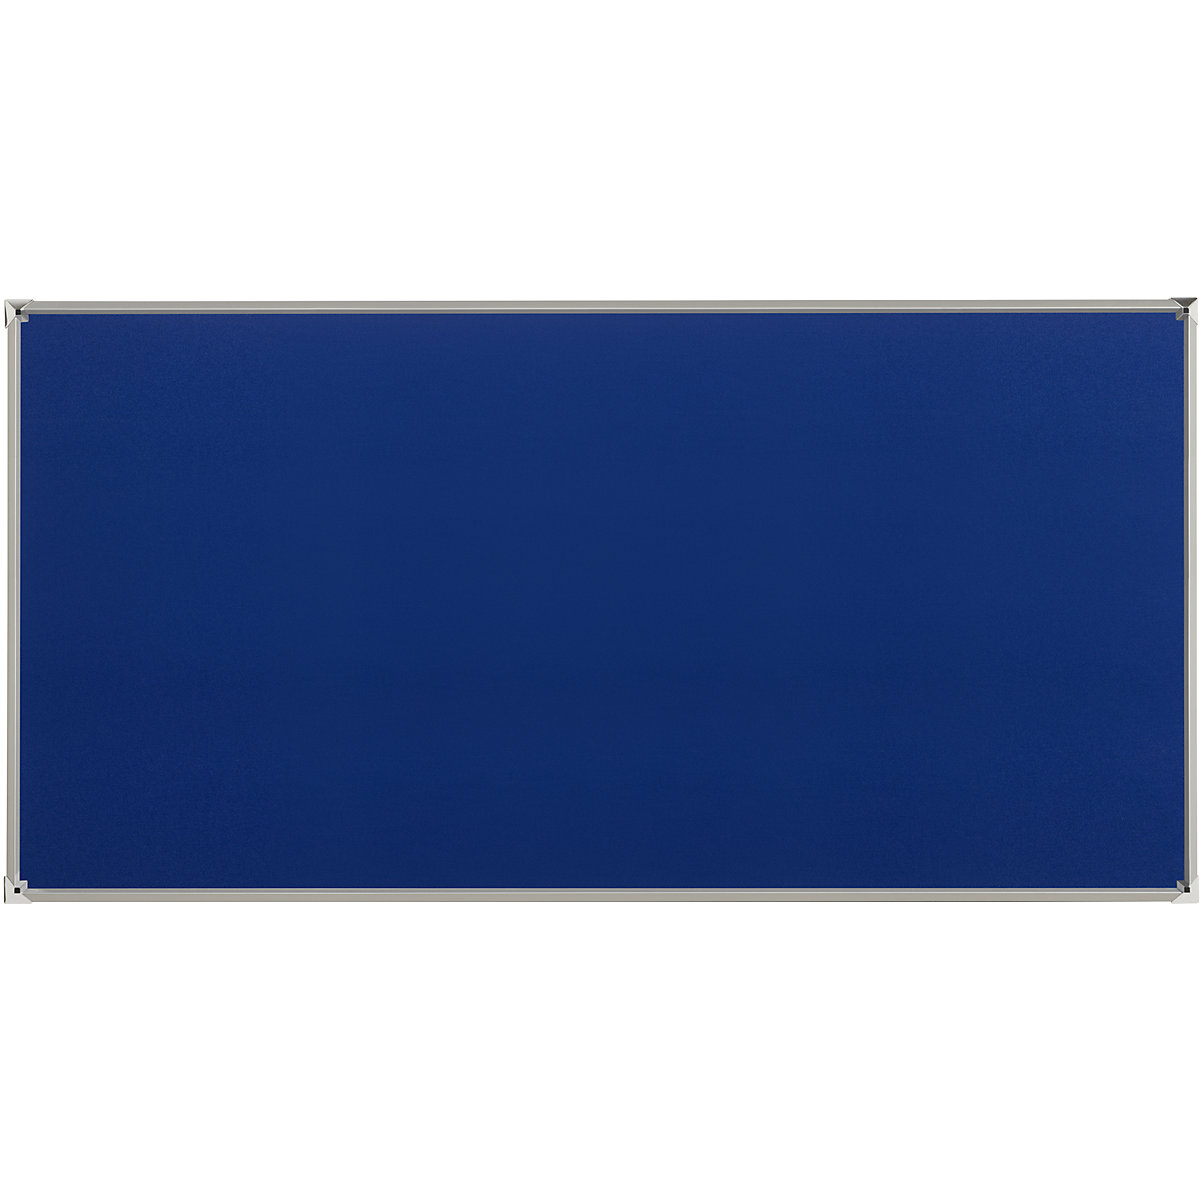 Oglasna ploča s aluminijskim okvirom – eurokraft pro, presvlaka od tkanine, u plavoj boji, ŠxV 2000 x 1000 mm-5